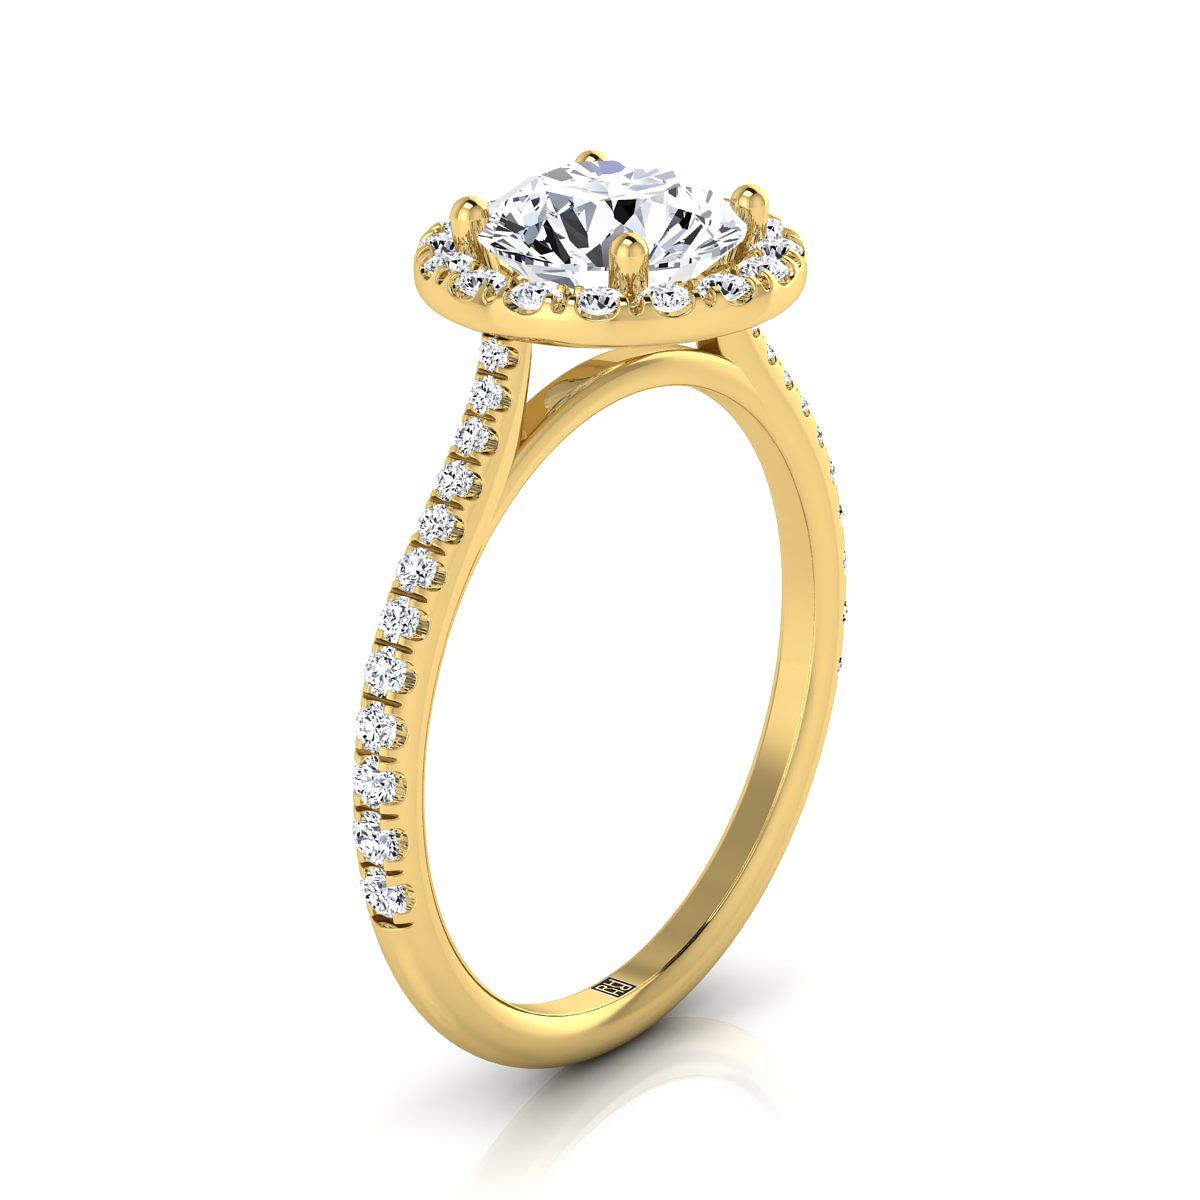 14K Yellow Gold Peridot Peridot Halo Diamond Pave Engagement Ring -3/8ctw